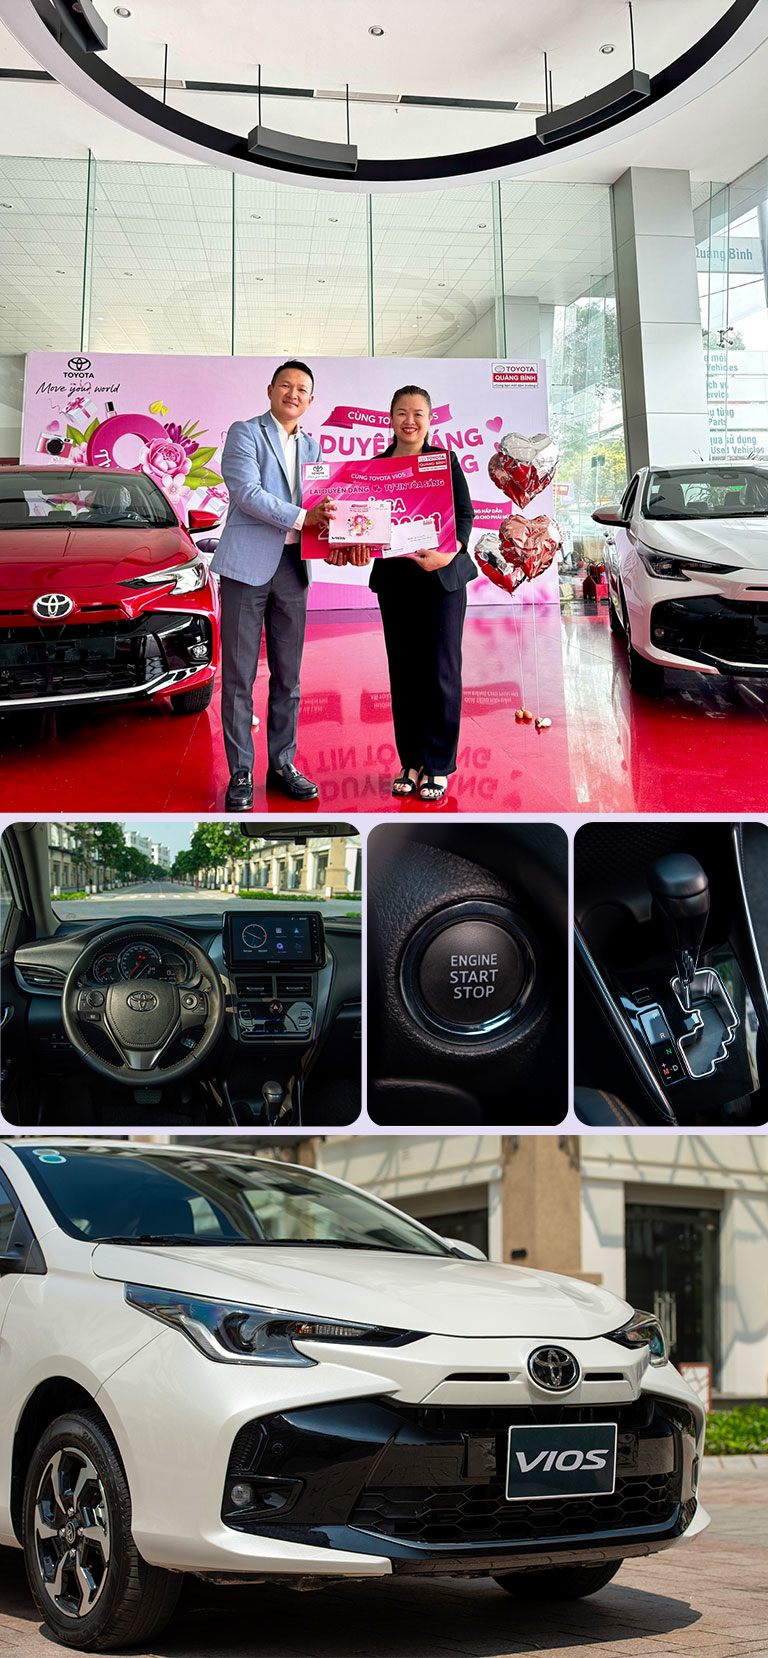 Toyota Vios - hình ảnh phản chiếu gu chọn xe của phụ nữ hiện đại - 14